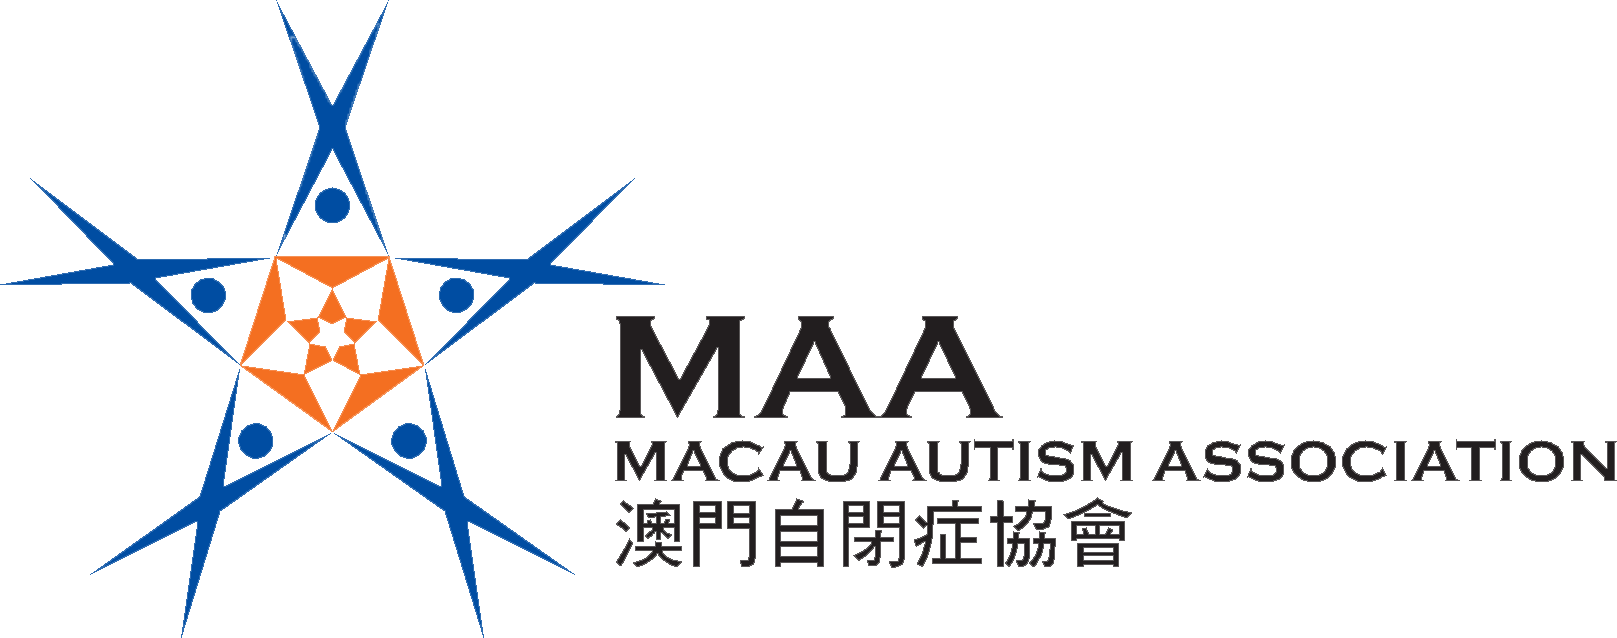 36_MAA_logo_1